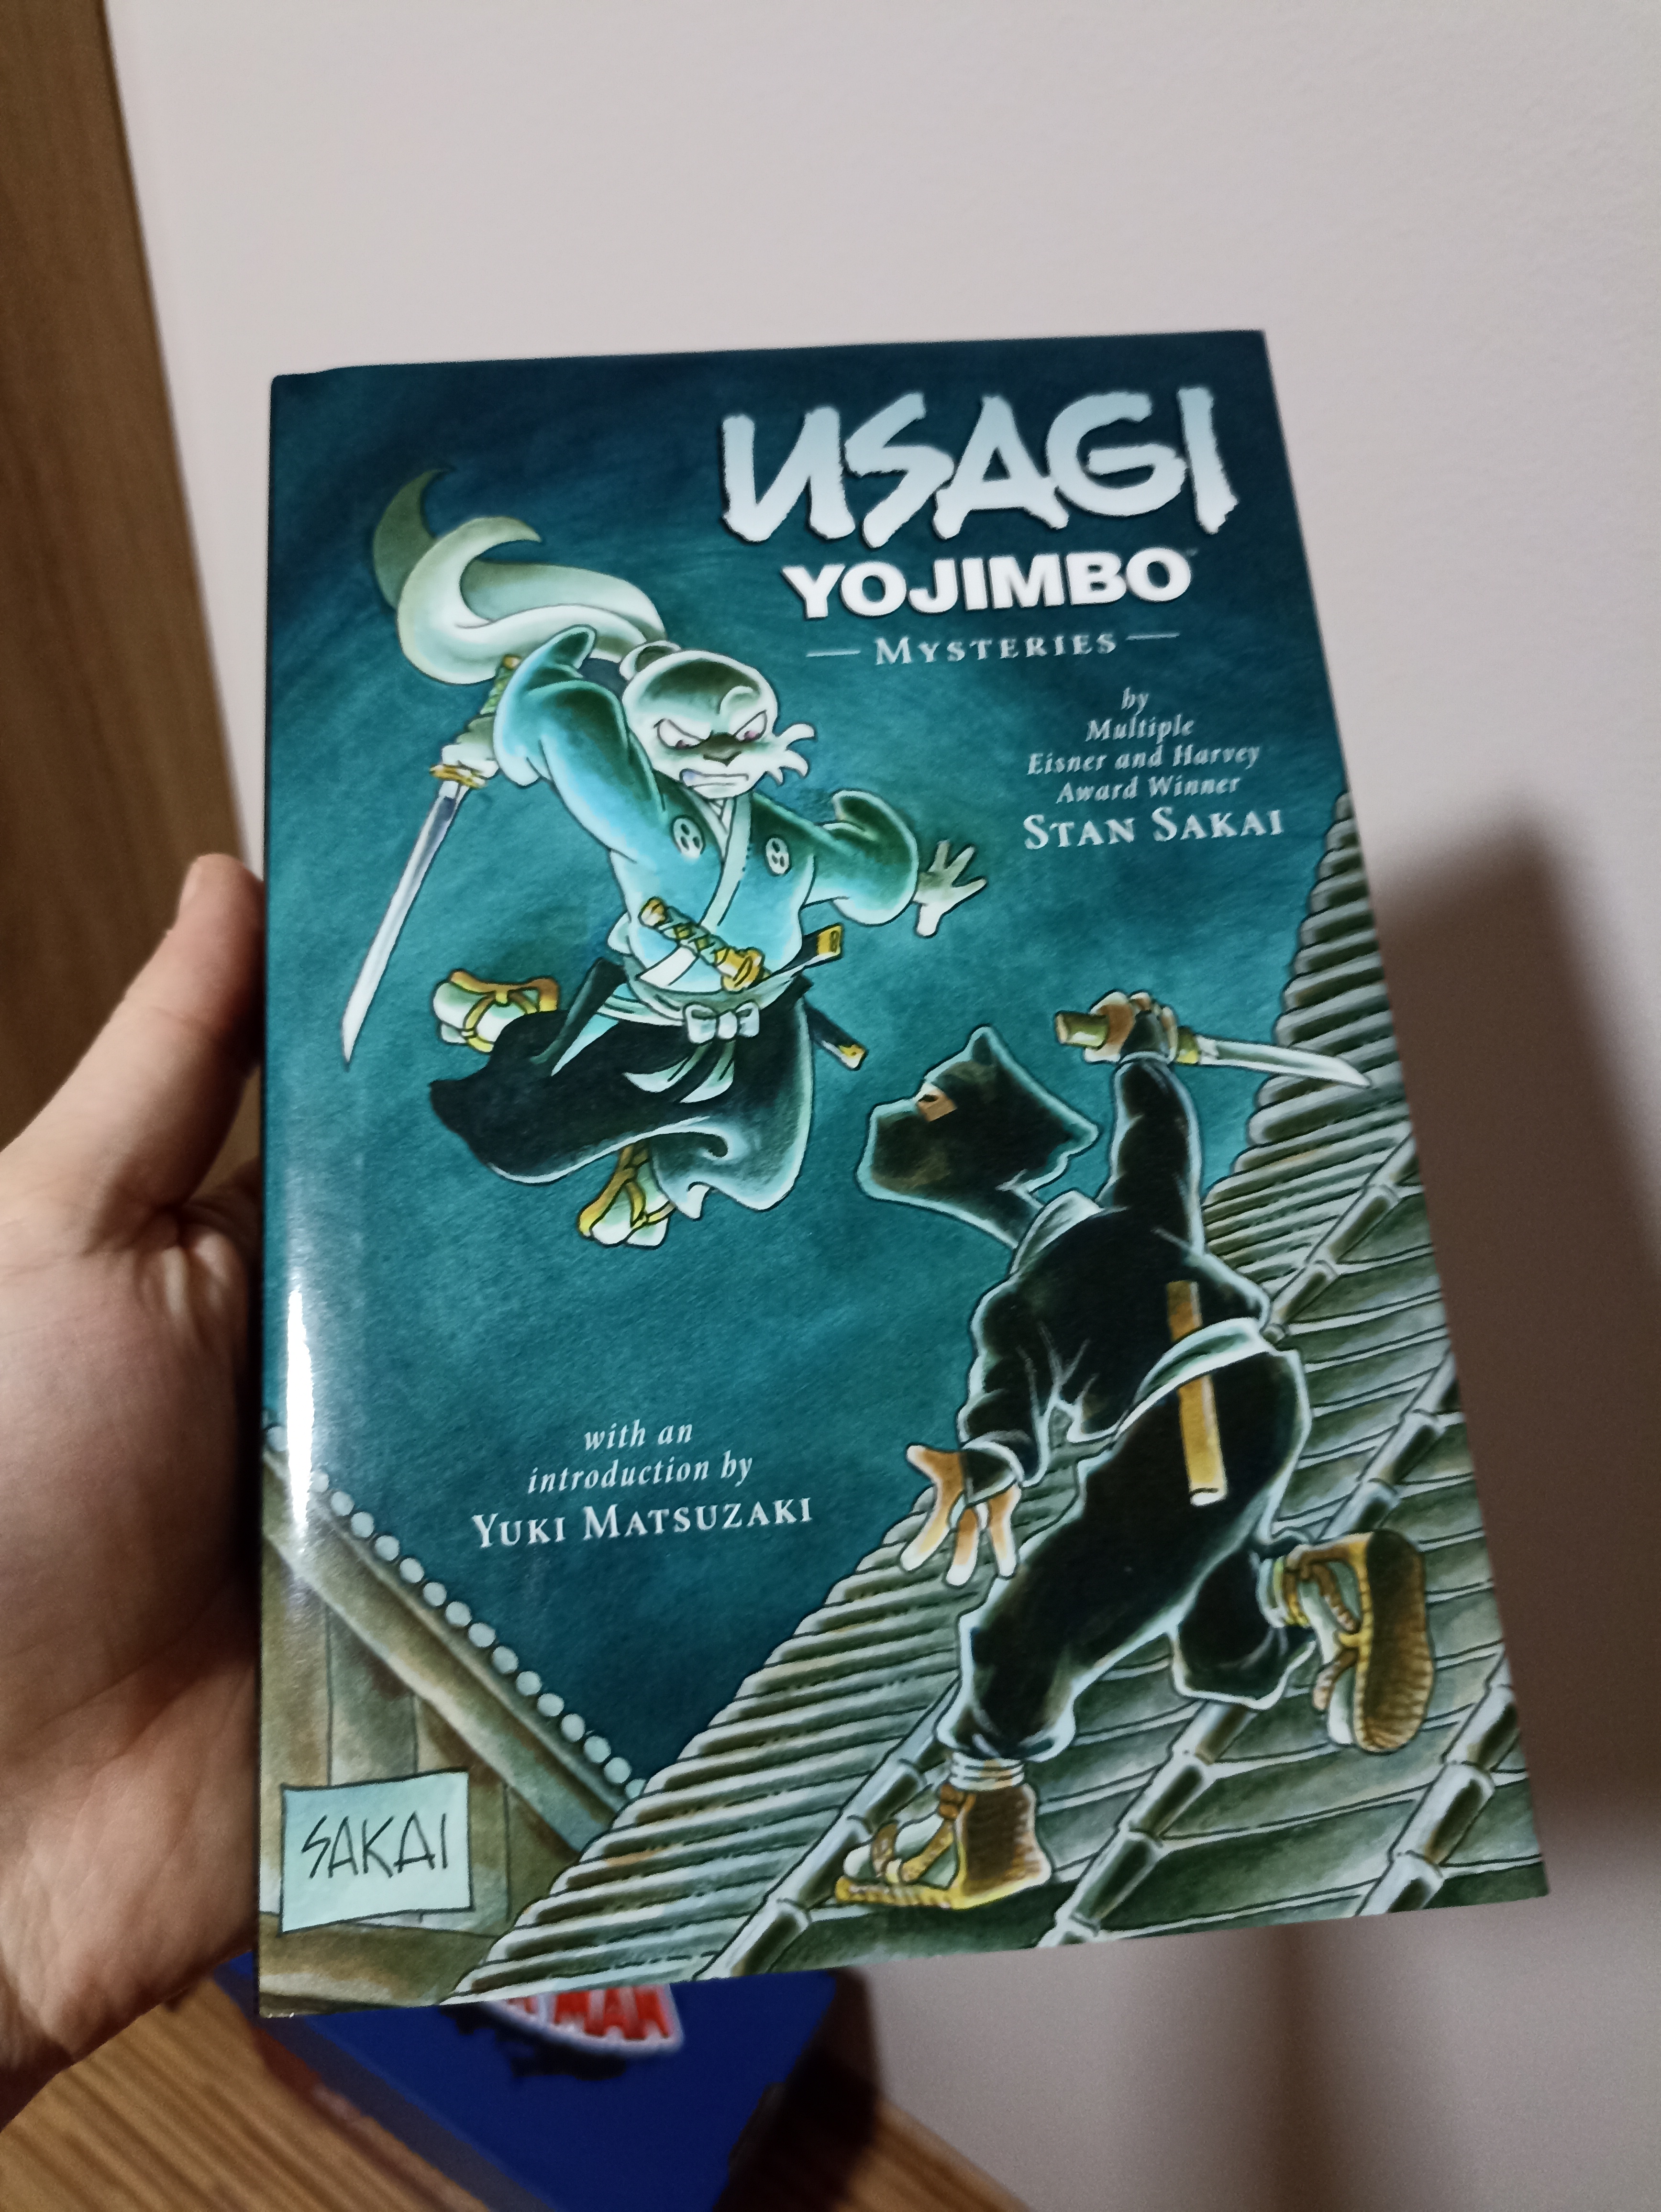 Usagi Yojimbo: Mániákus Usagi rajongóként kizárt, hogy ne legyen egy Stan Sakai által dedikált könyvem. És pont.